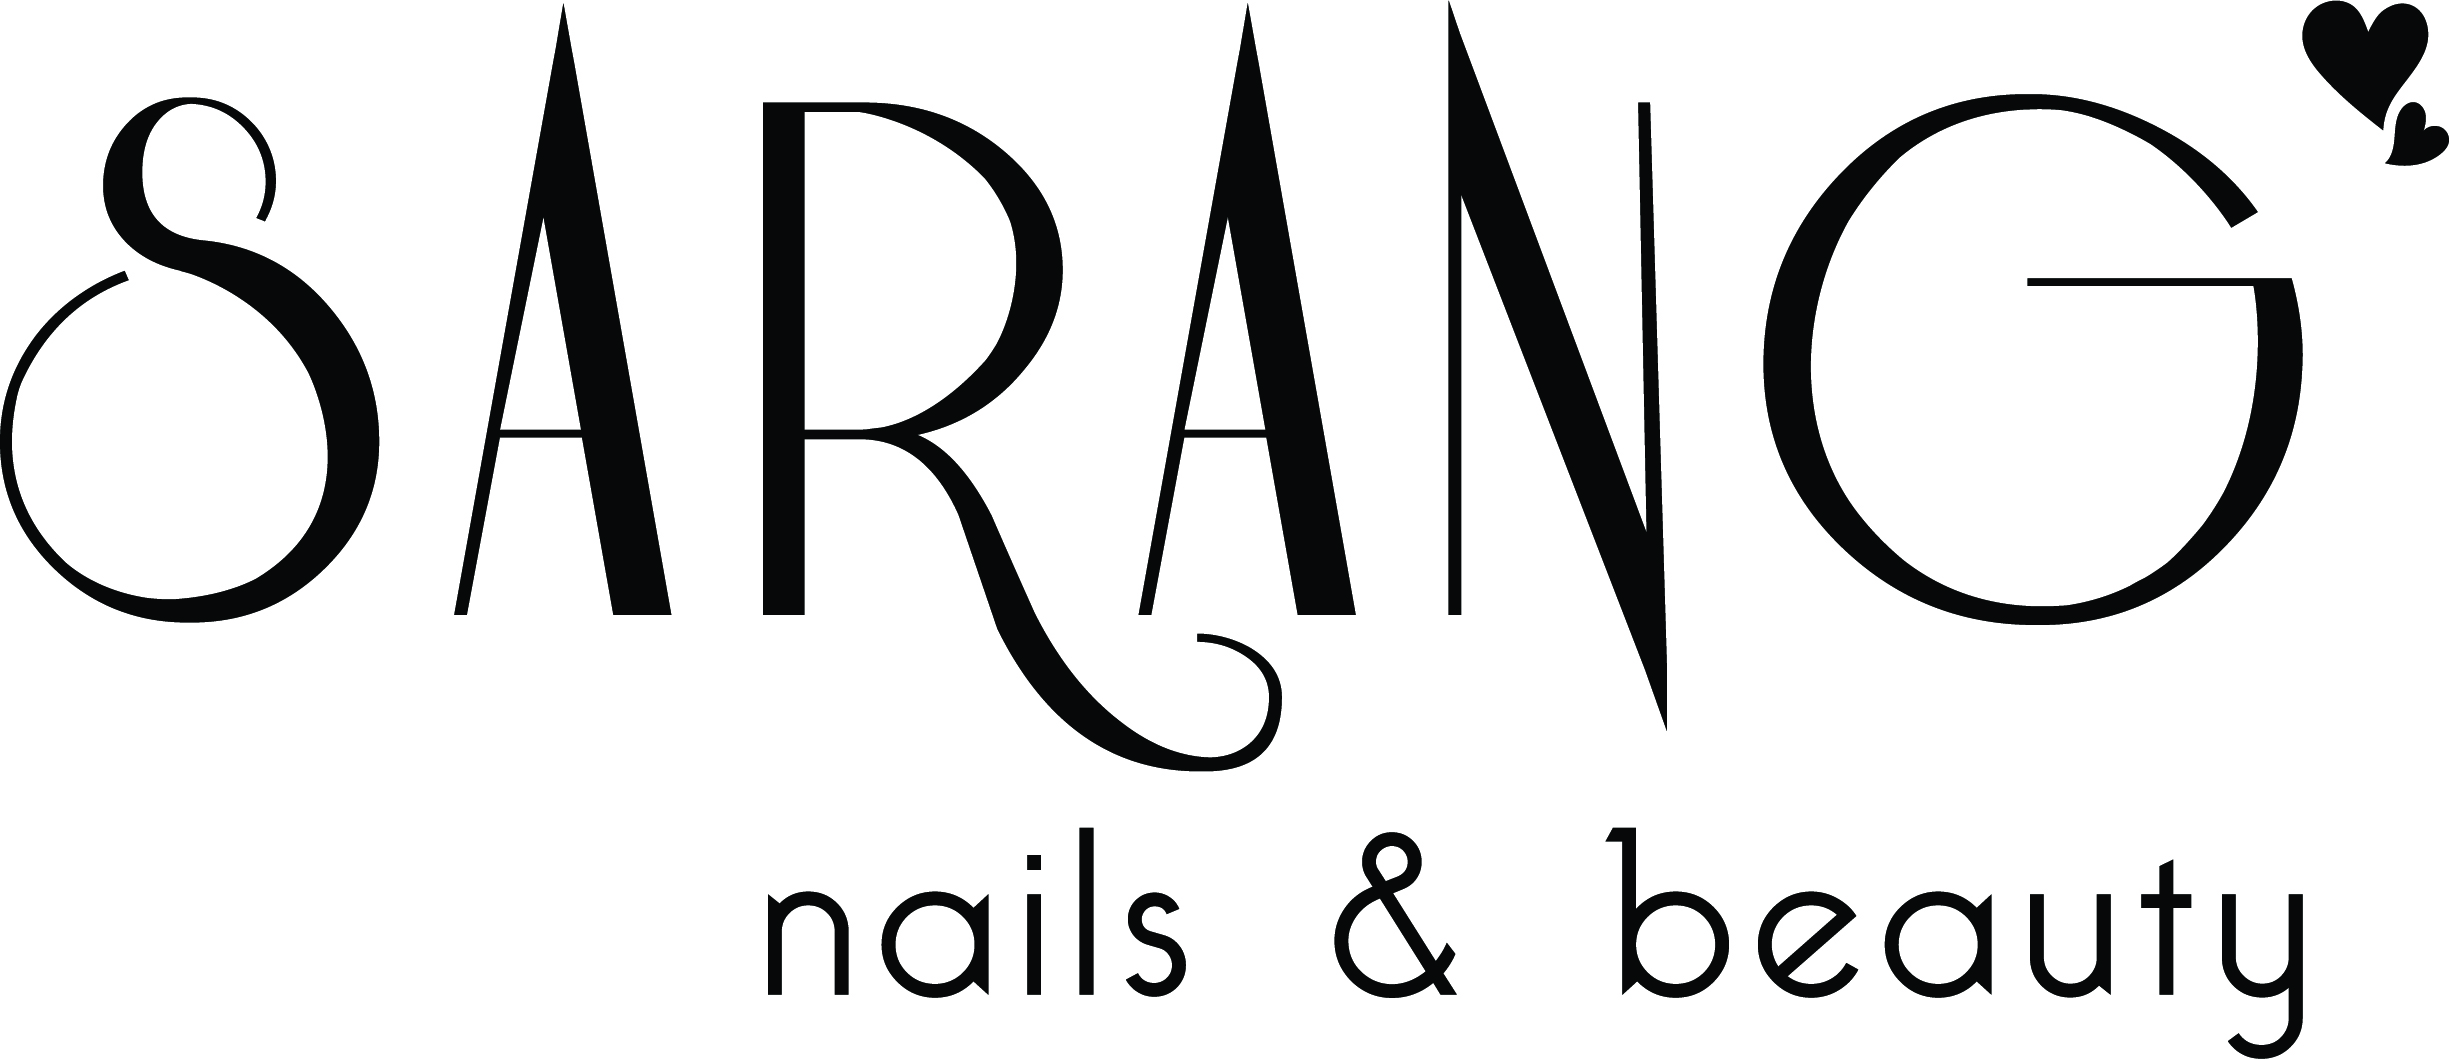 sarang nails logo 2